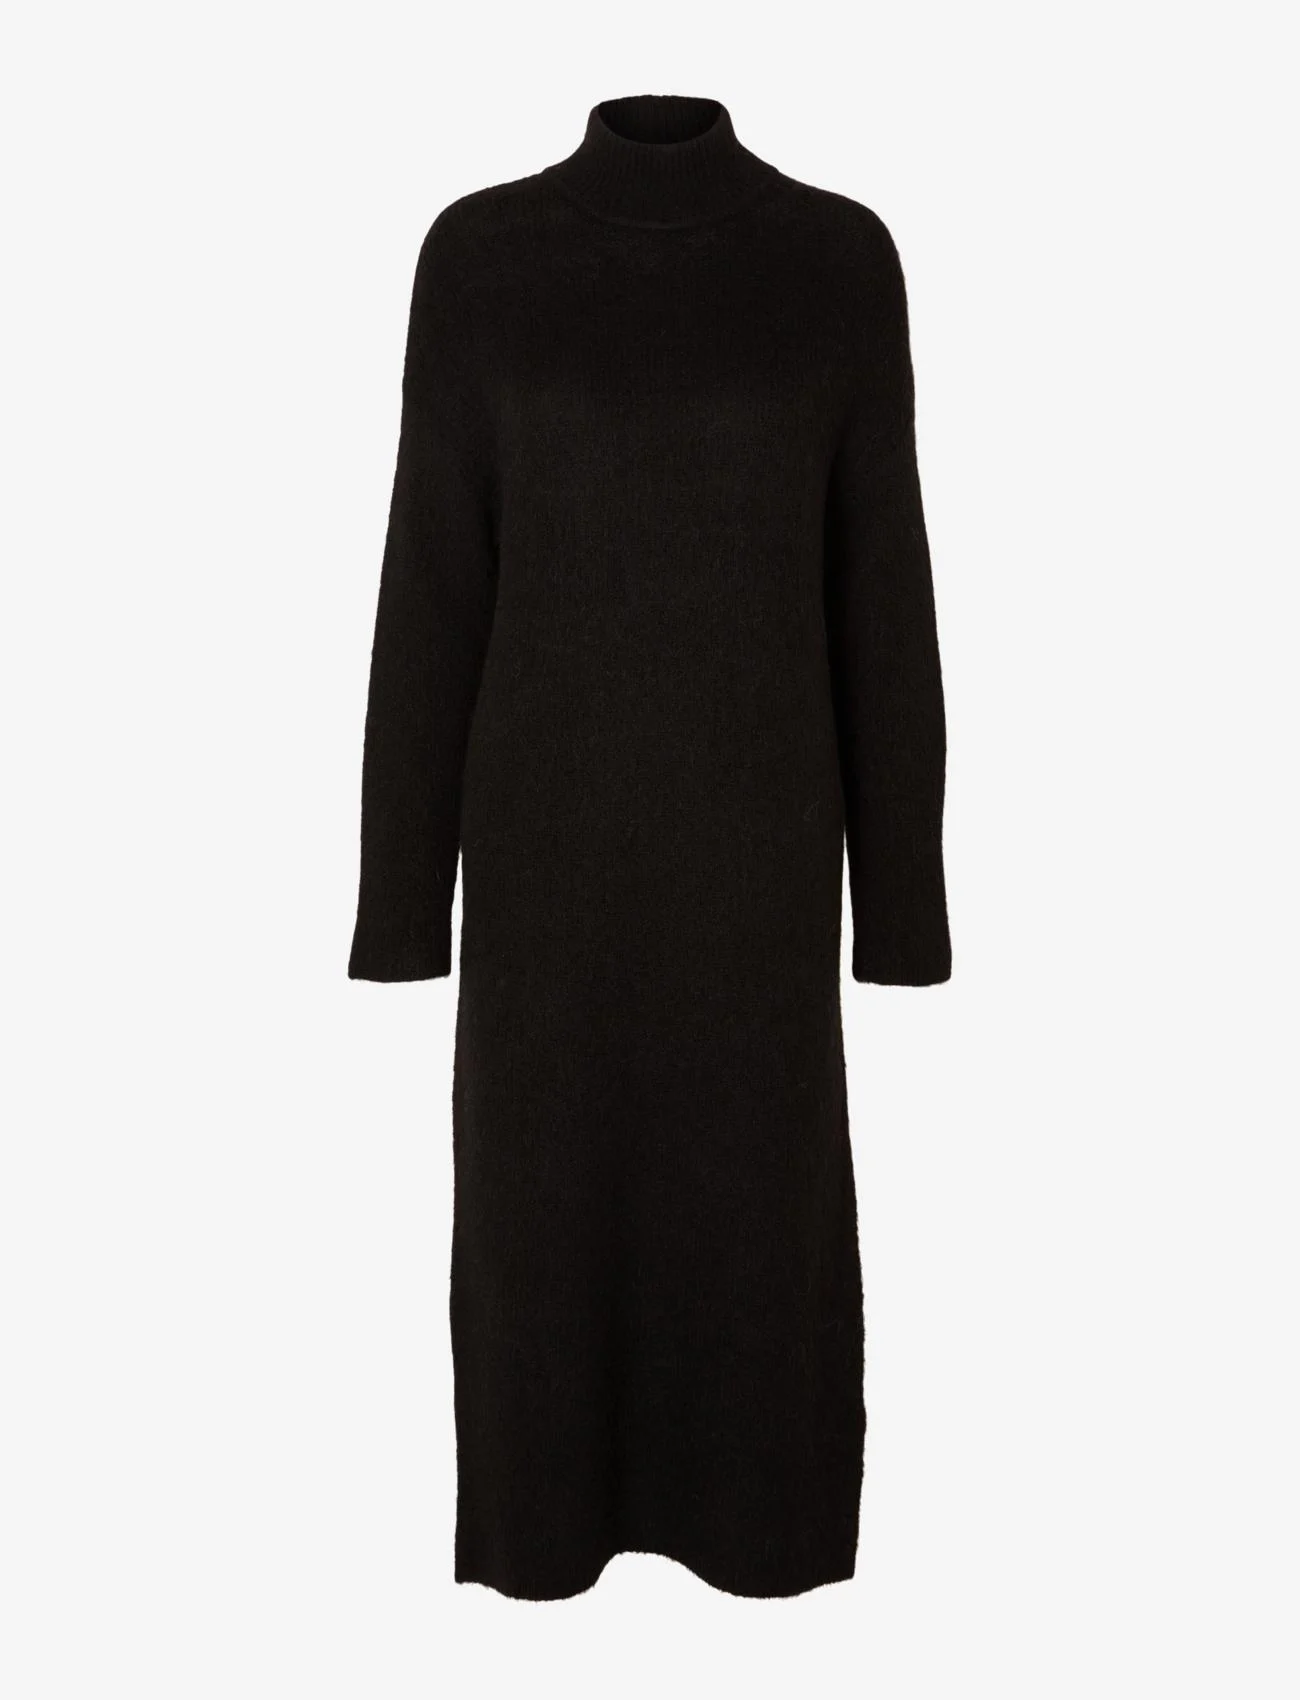 Selected Femme - SLFMALINE LS KNIT DRESS HIGH NECK NOOS - strickkleider - black - 0